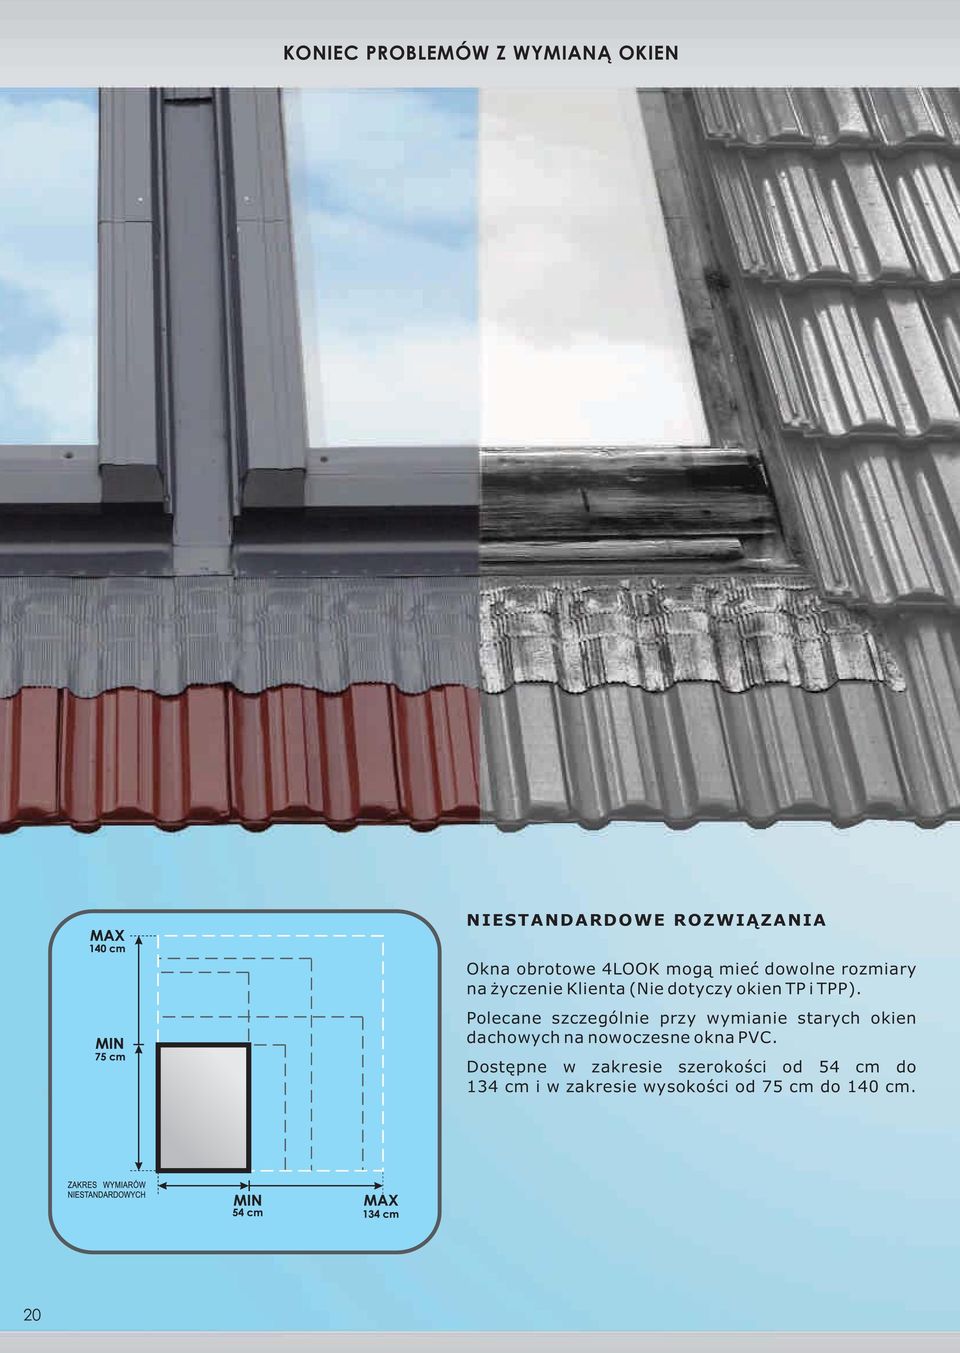 Polecane szczególnie przy wymianie starych okien dachowych na nowoczesne okna PVC.